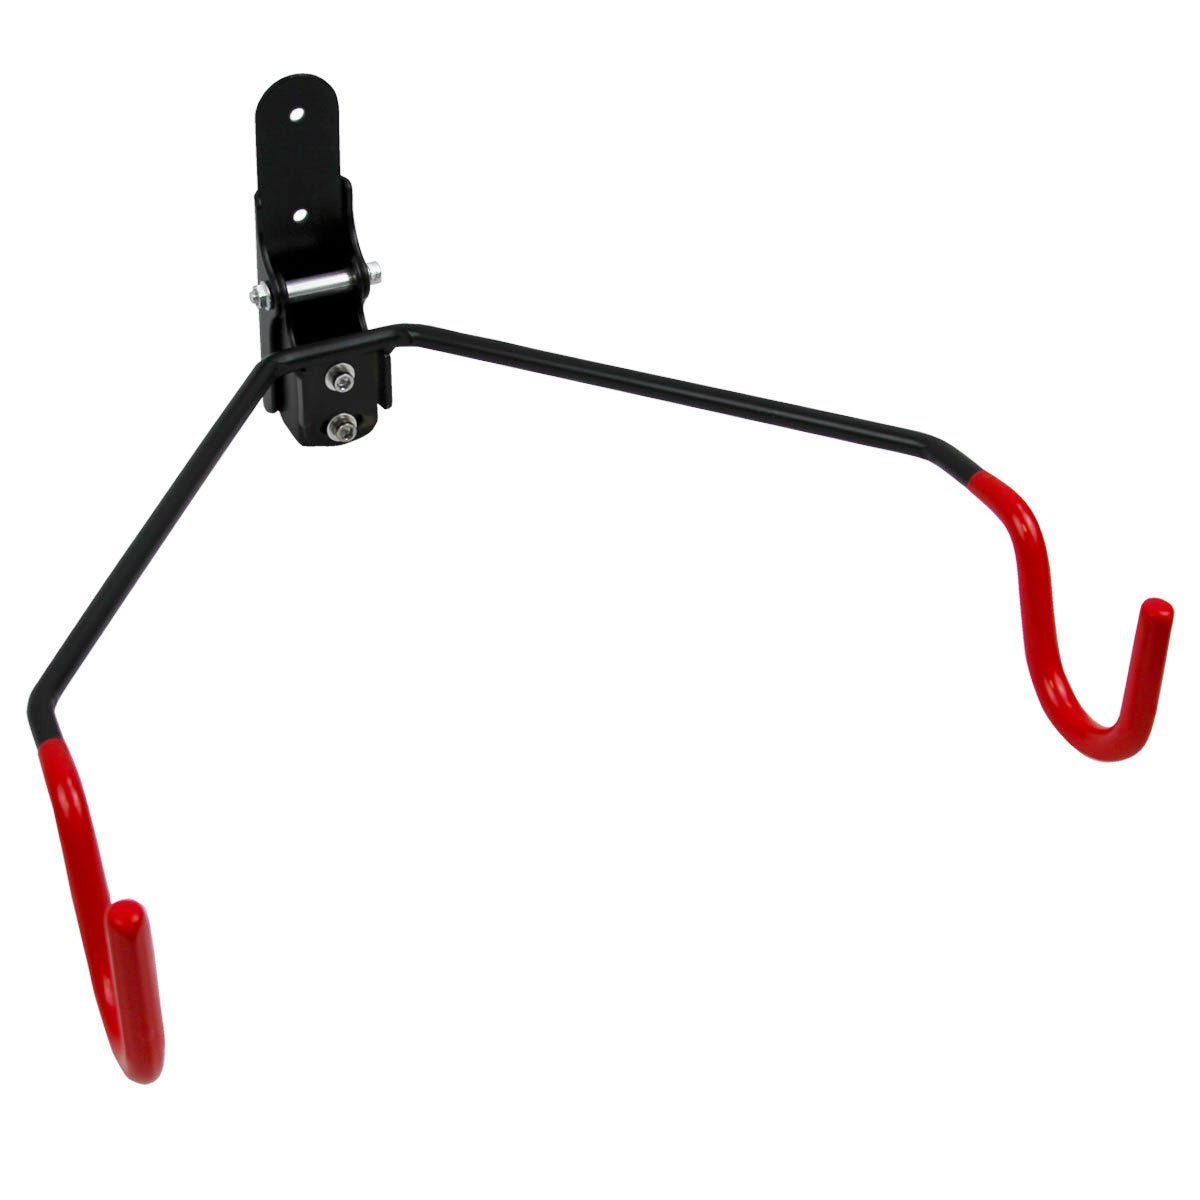 URBAN ZWEIRAD Fahrradwandhalterung klappbare Fahrrad-Wandhalterung mit Rahmenschutz inkl. Montagematerial Rot